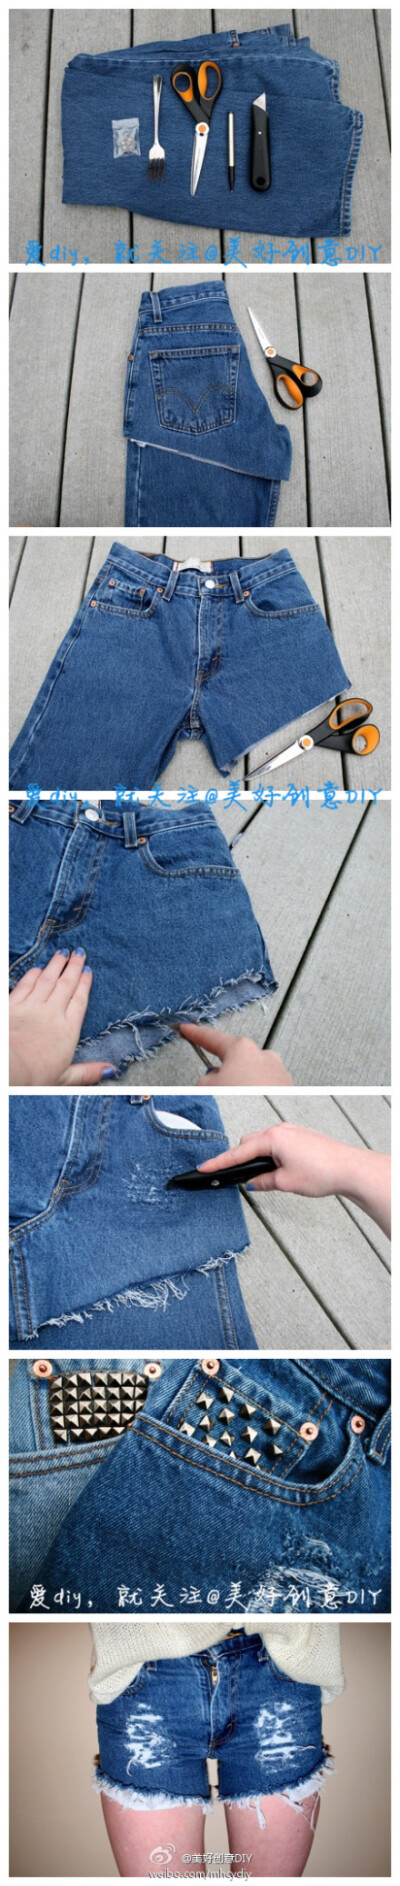 长裤变短裤，就是这么简单~所需材料：剪刀、小刀、勺子、铆钉、标记笔。@美好创意DIY 整理分享自网络